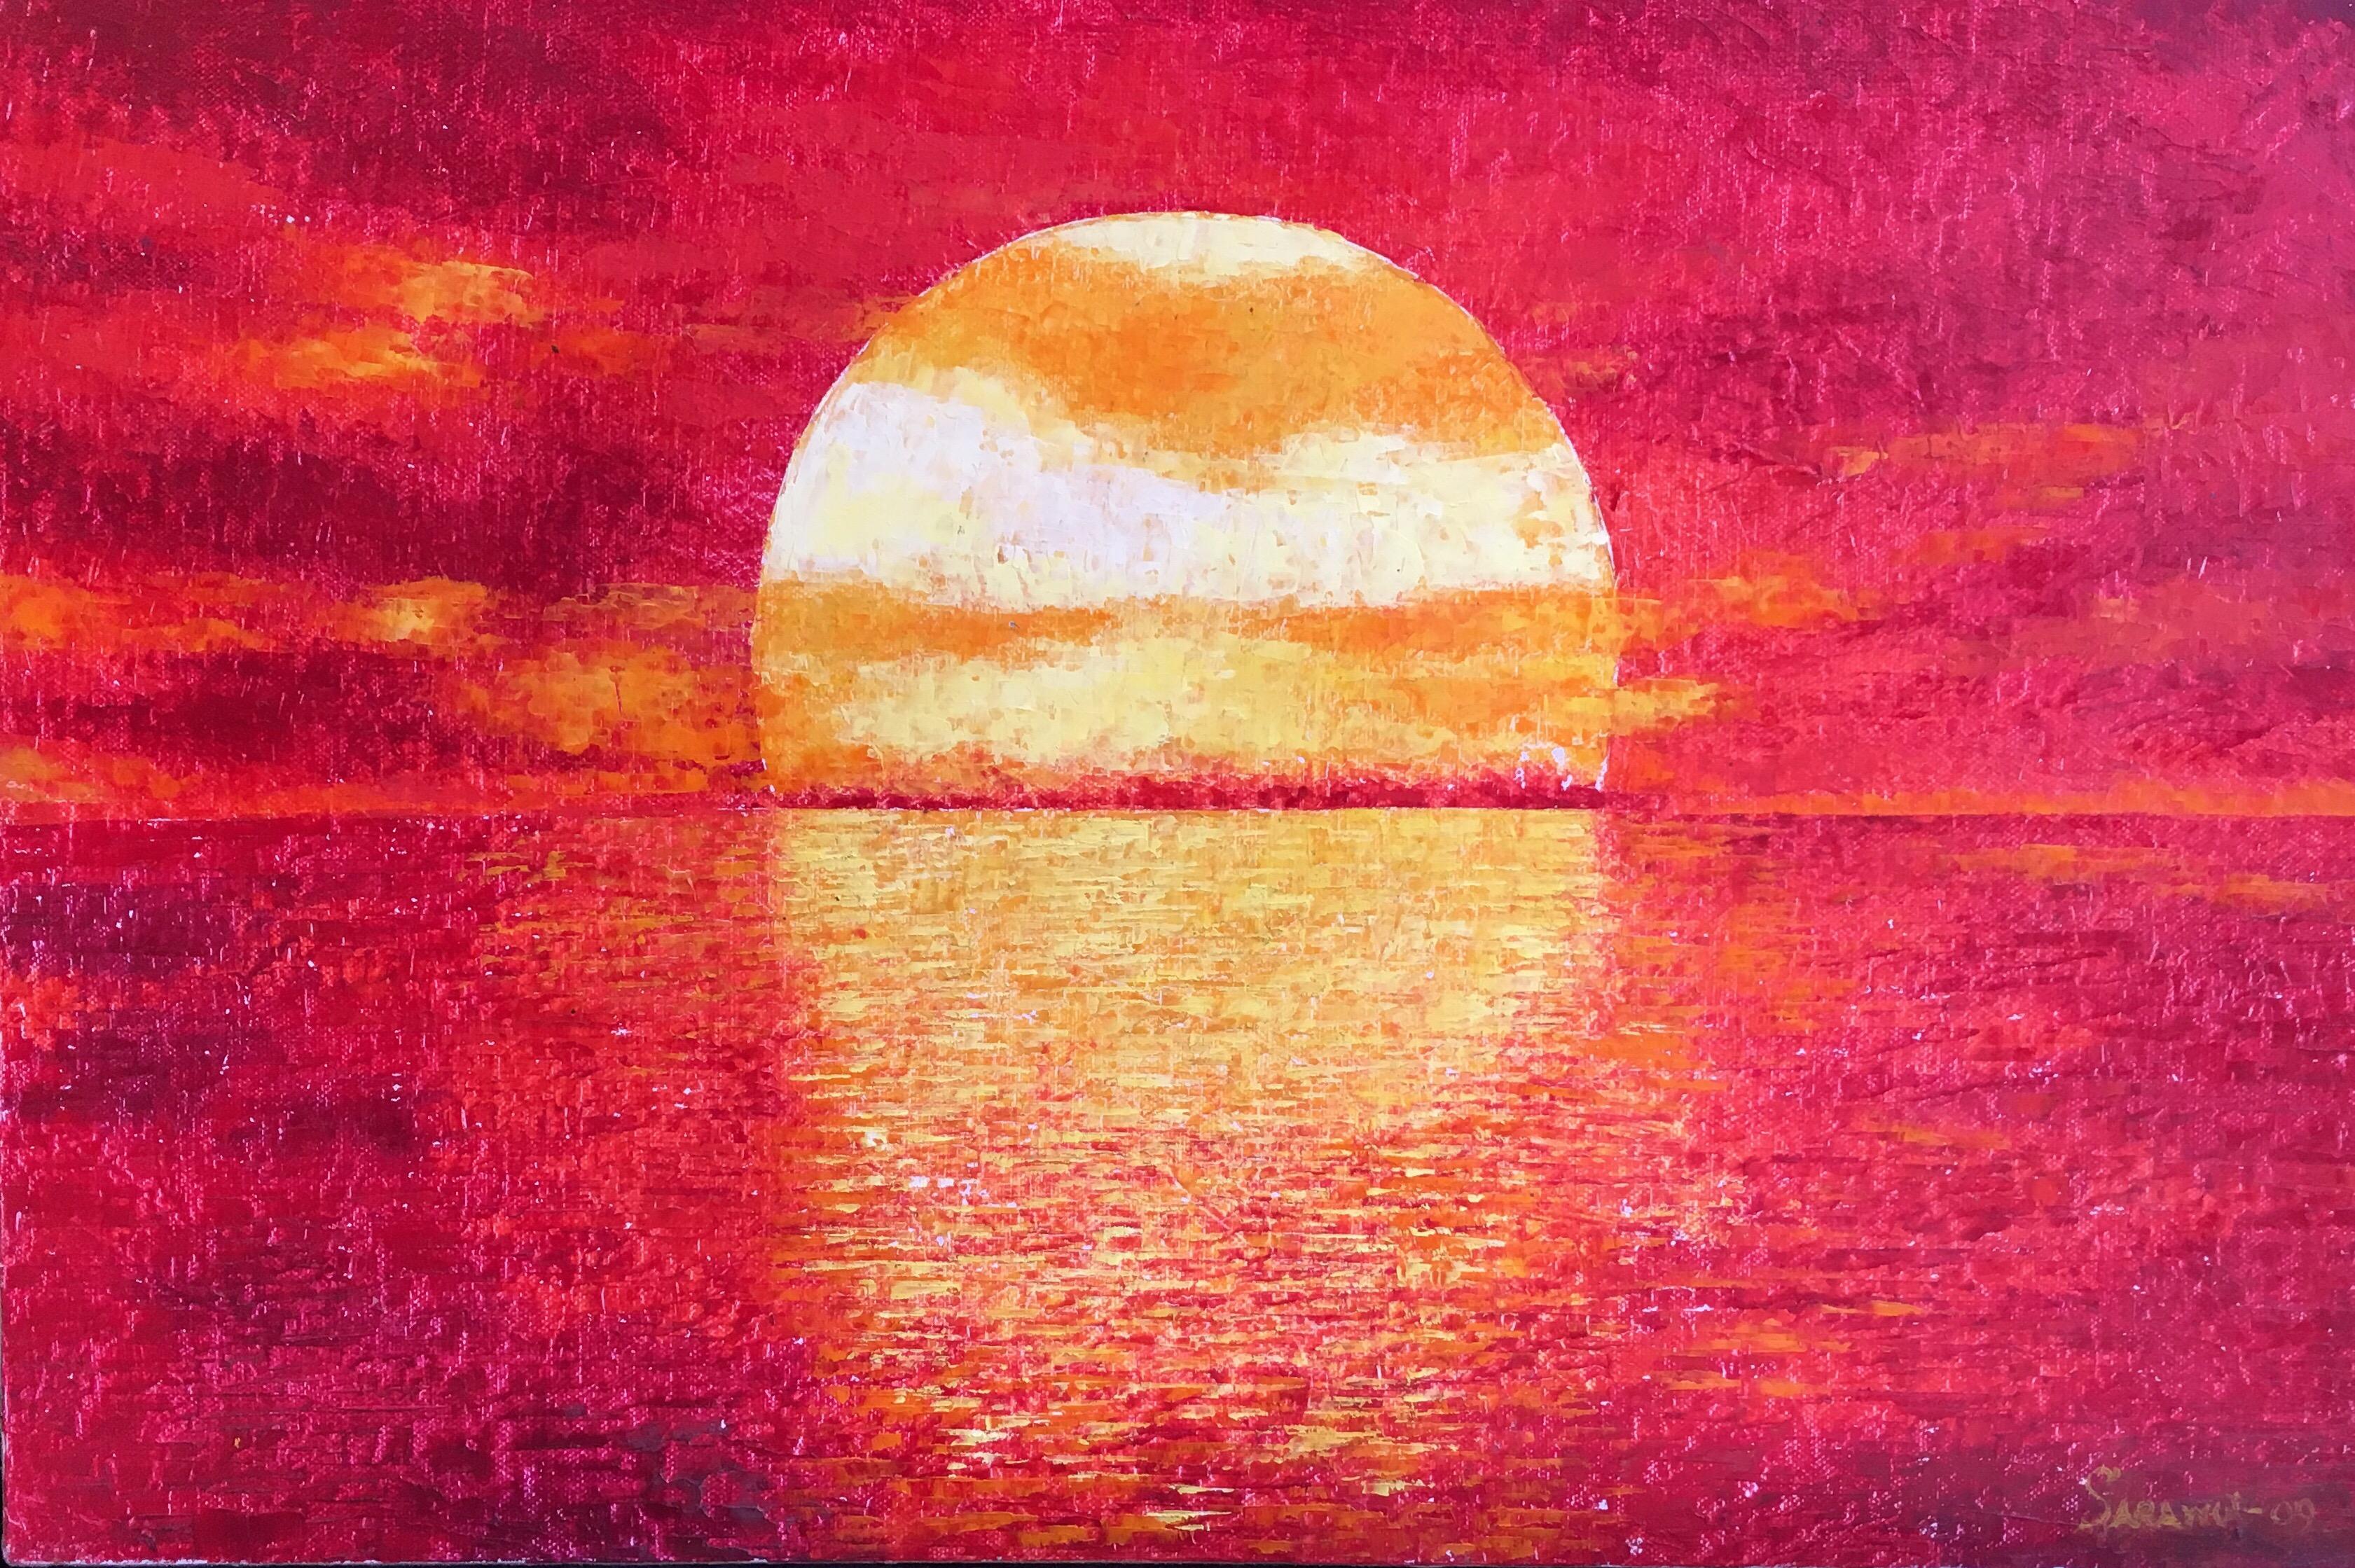 Still-Life Painting Unknown - Le ciel rouge, paysage impressionniste, peinture à l'huile signée